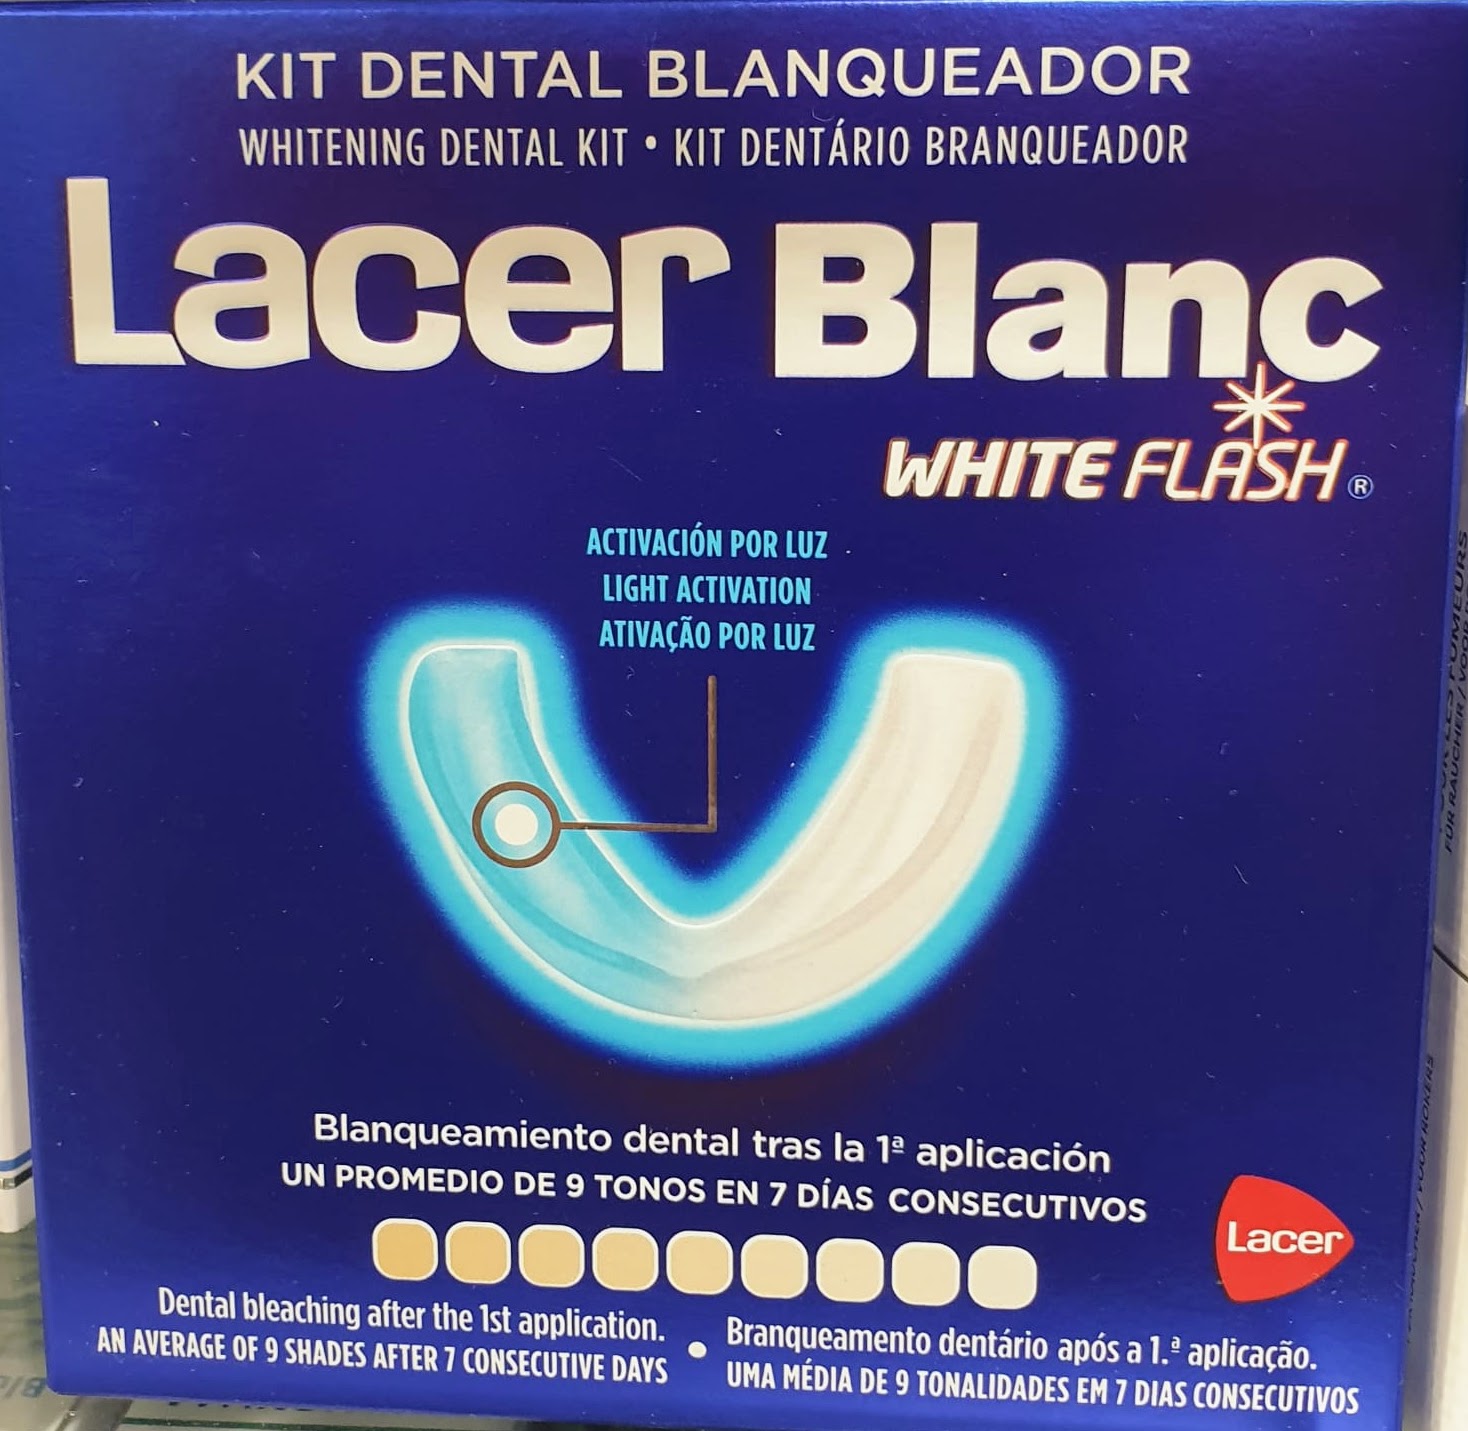 BLANQUEA TUS DIENTES EN 1 SEMANA CON LACER BLANC WHITE FLASH Lacer Blanc White Flash es un kit de blanqueamiento dental “en casa” de 10 usos basado en una nueva tecnología